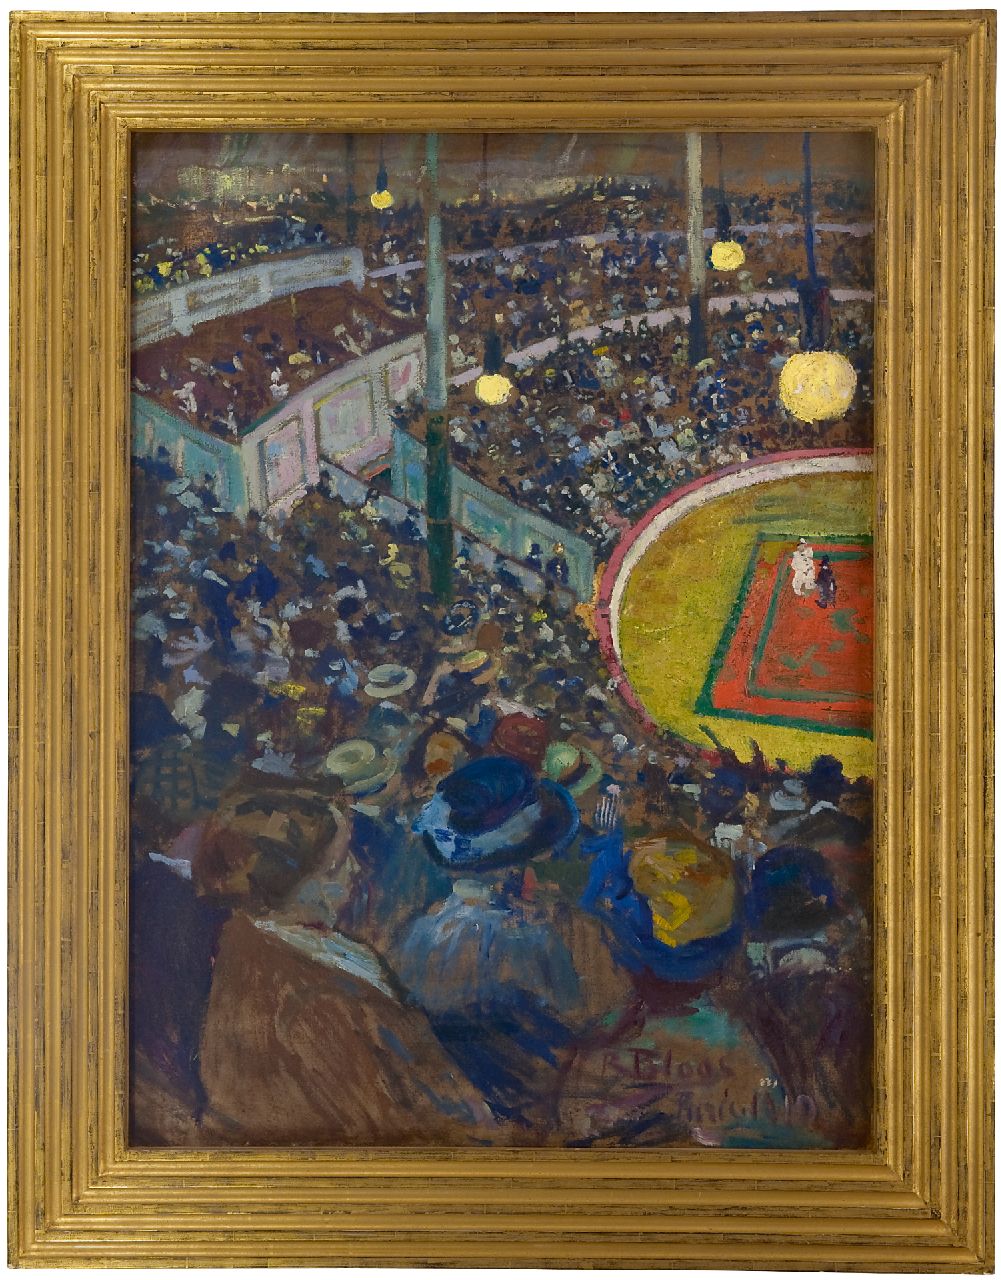 Bloos R.W.  | 'Richard' Willi Bloos, Cirque Médrano, Parijs, olieverf op doek 100,0 x 72,5 cm, gesigneerd rechtsonder en gedateerd 'Paris' 1910